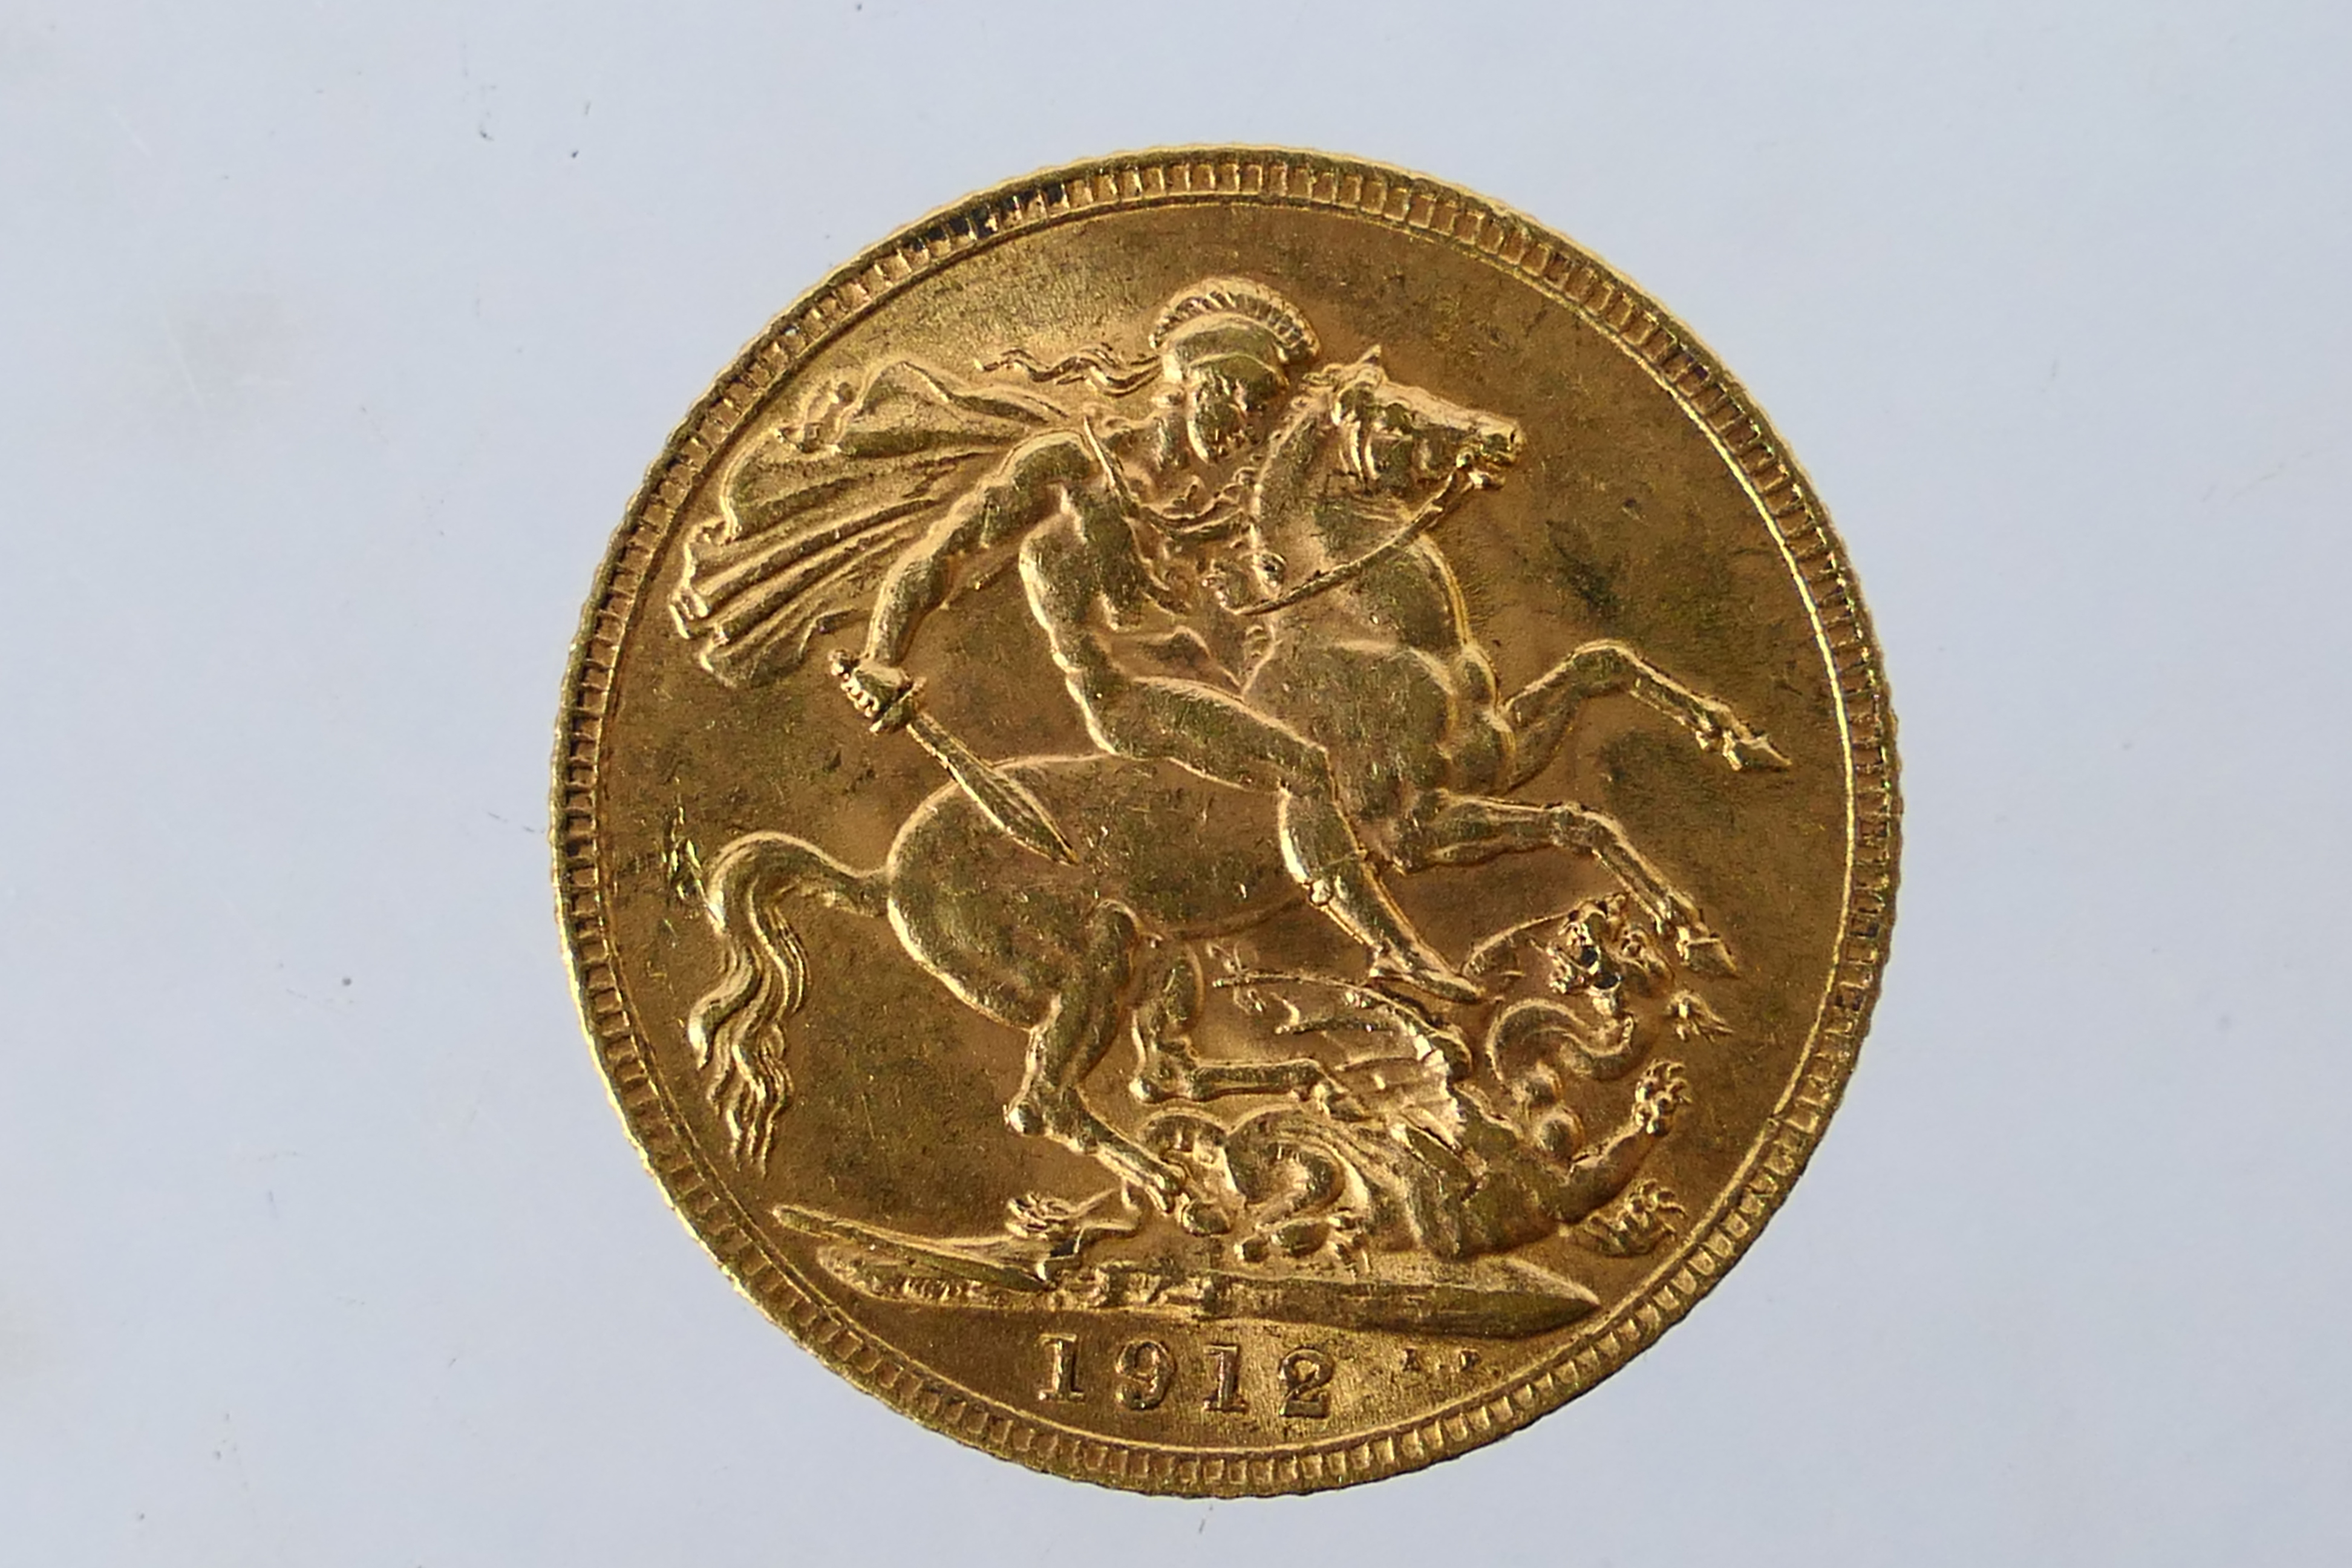 Gold Sovereign - George V sovereign (full), 1912, 8 grams. - Image 2 of 2